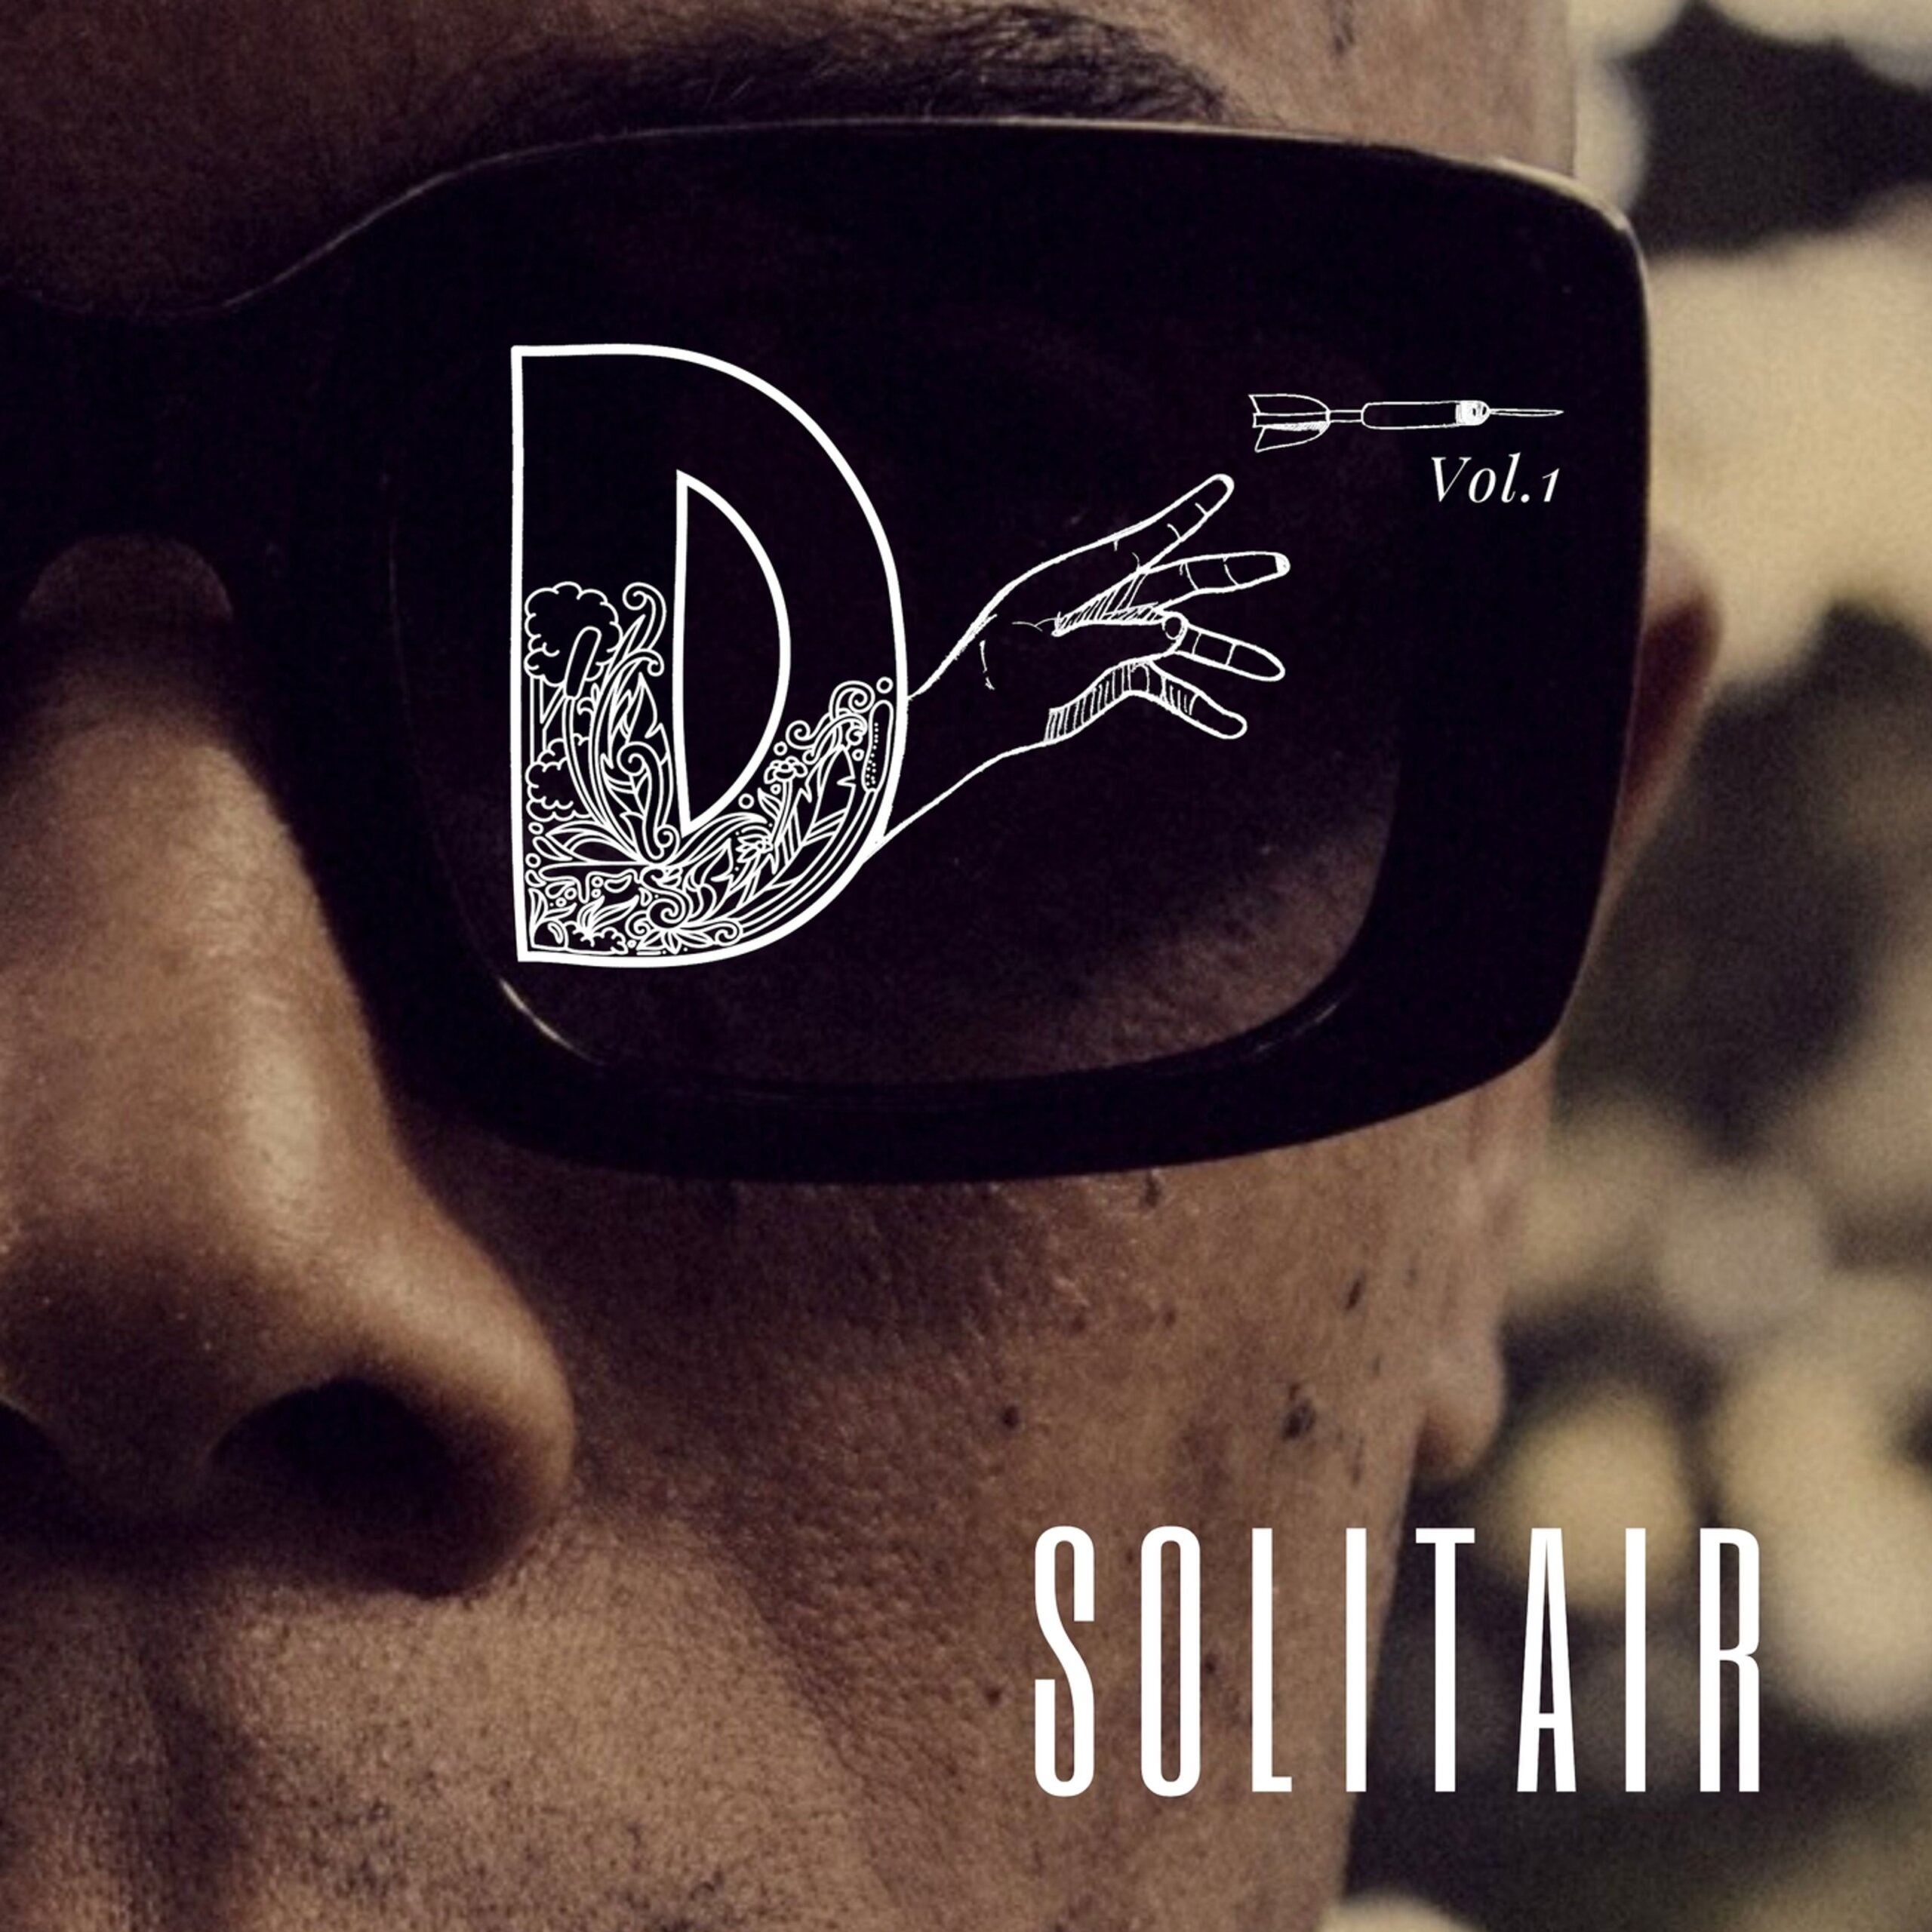 Solitair Drops ‘Dangerous Art’ Album + “The Theme Song/Fire Blaze” Video feat. Rich Kidd